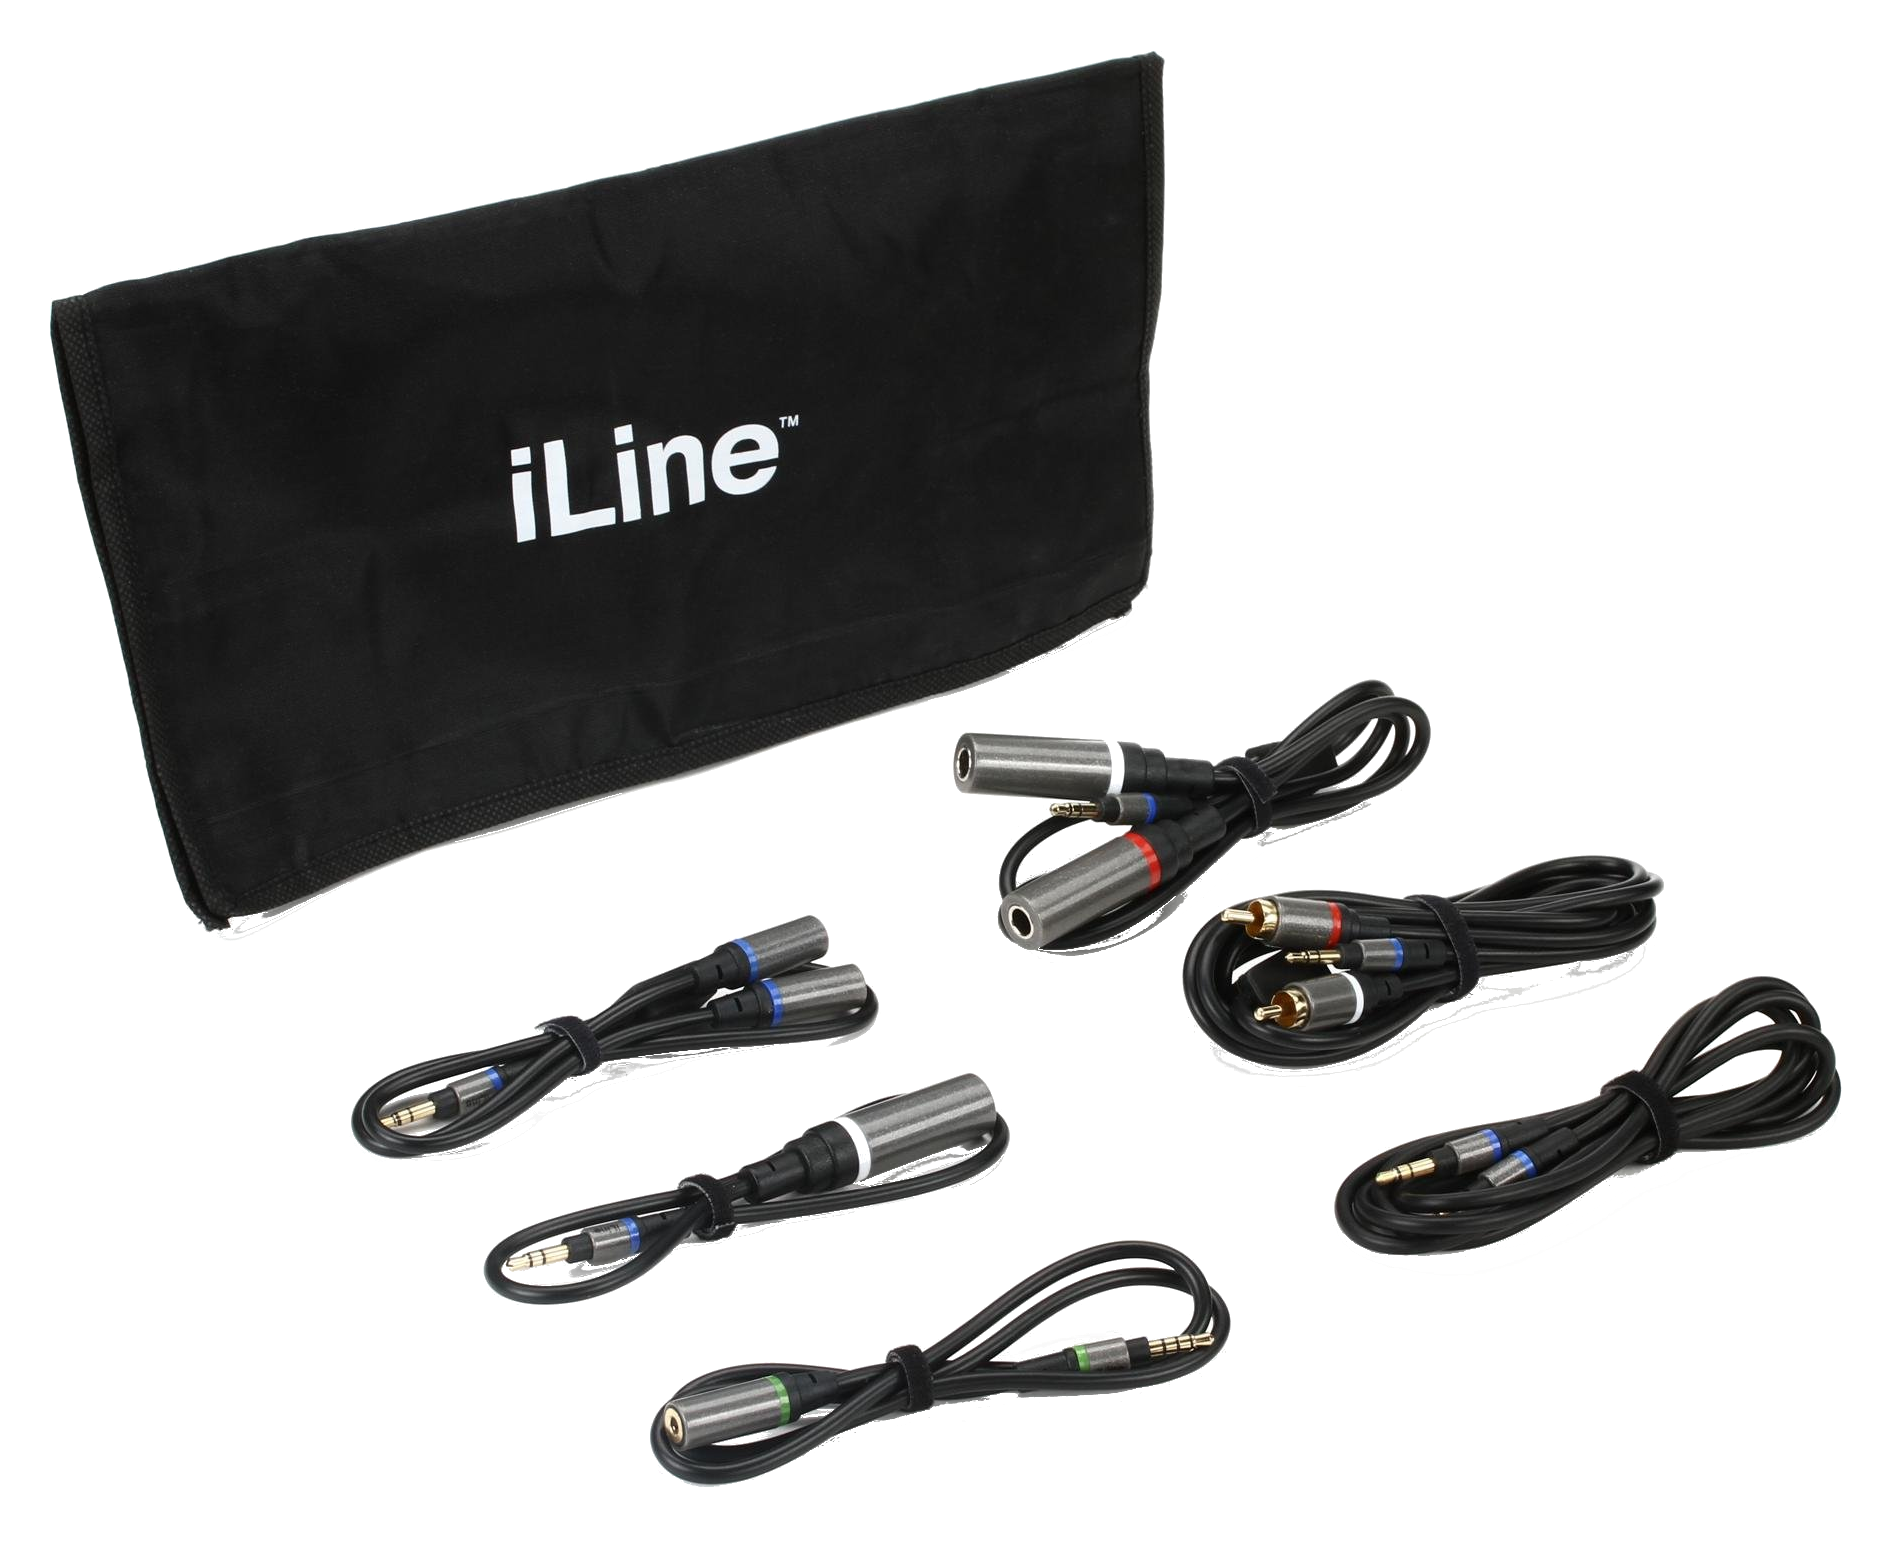 IK Multimedia iLine Music Cable Kit